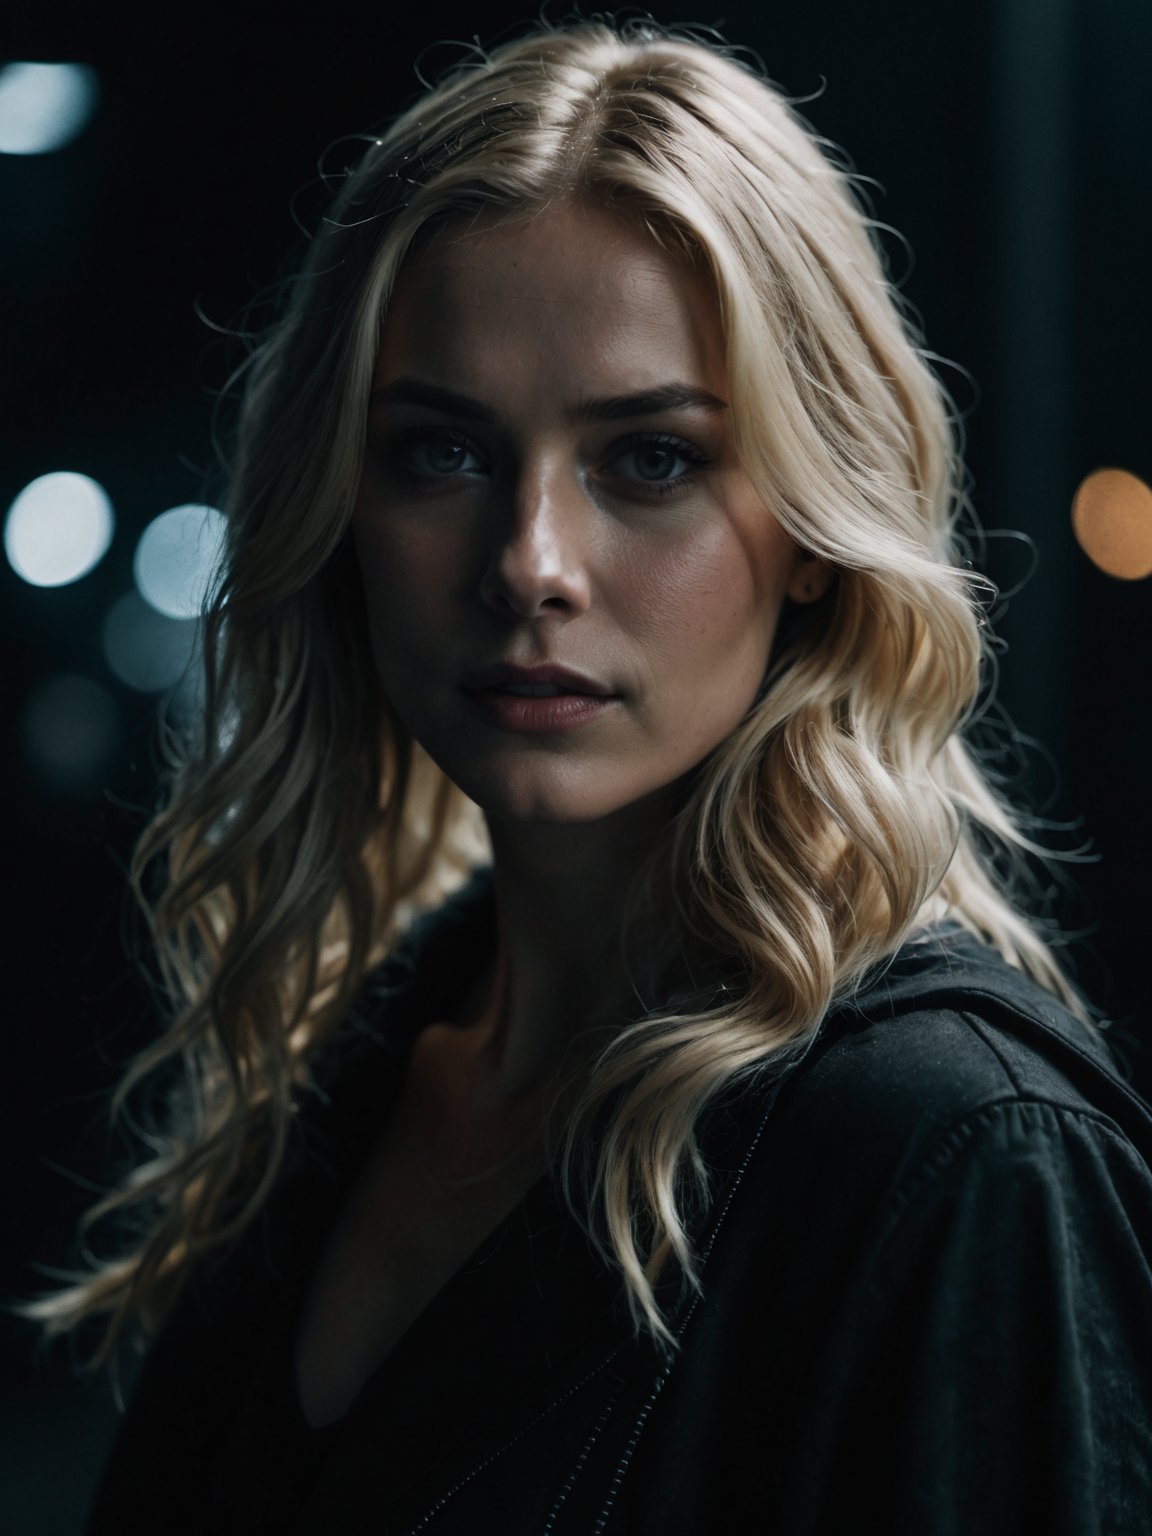 super cute blonde woman in a dark theme, cinematic film still